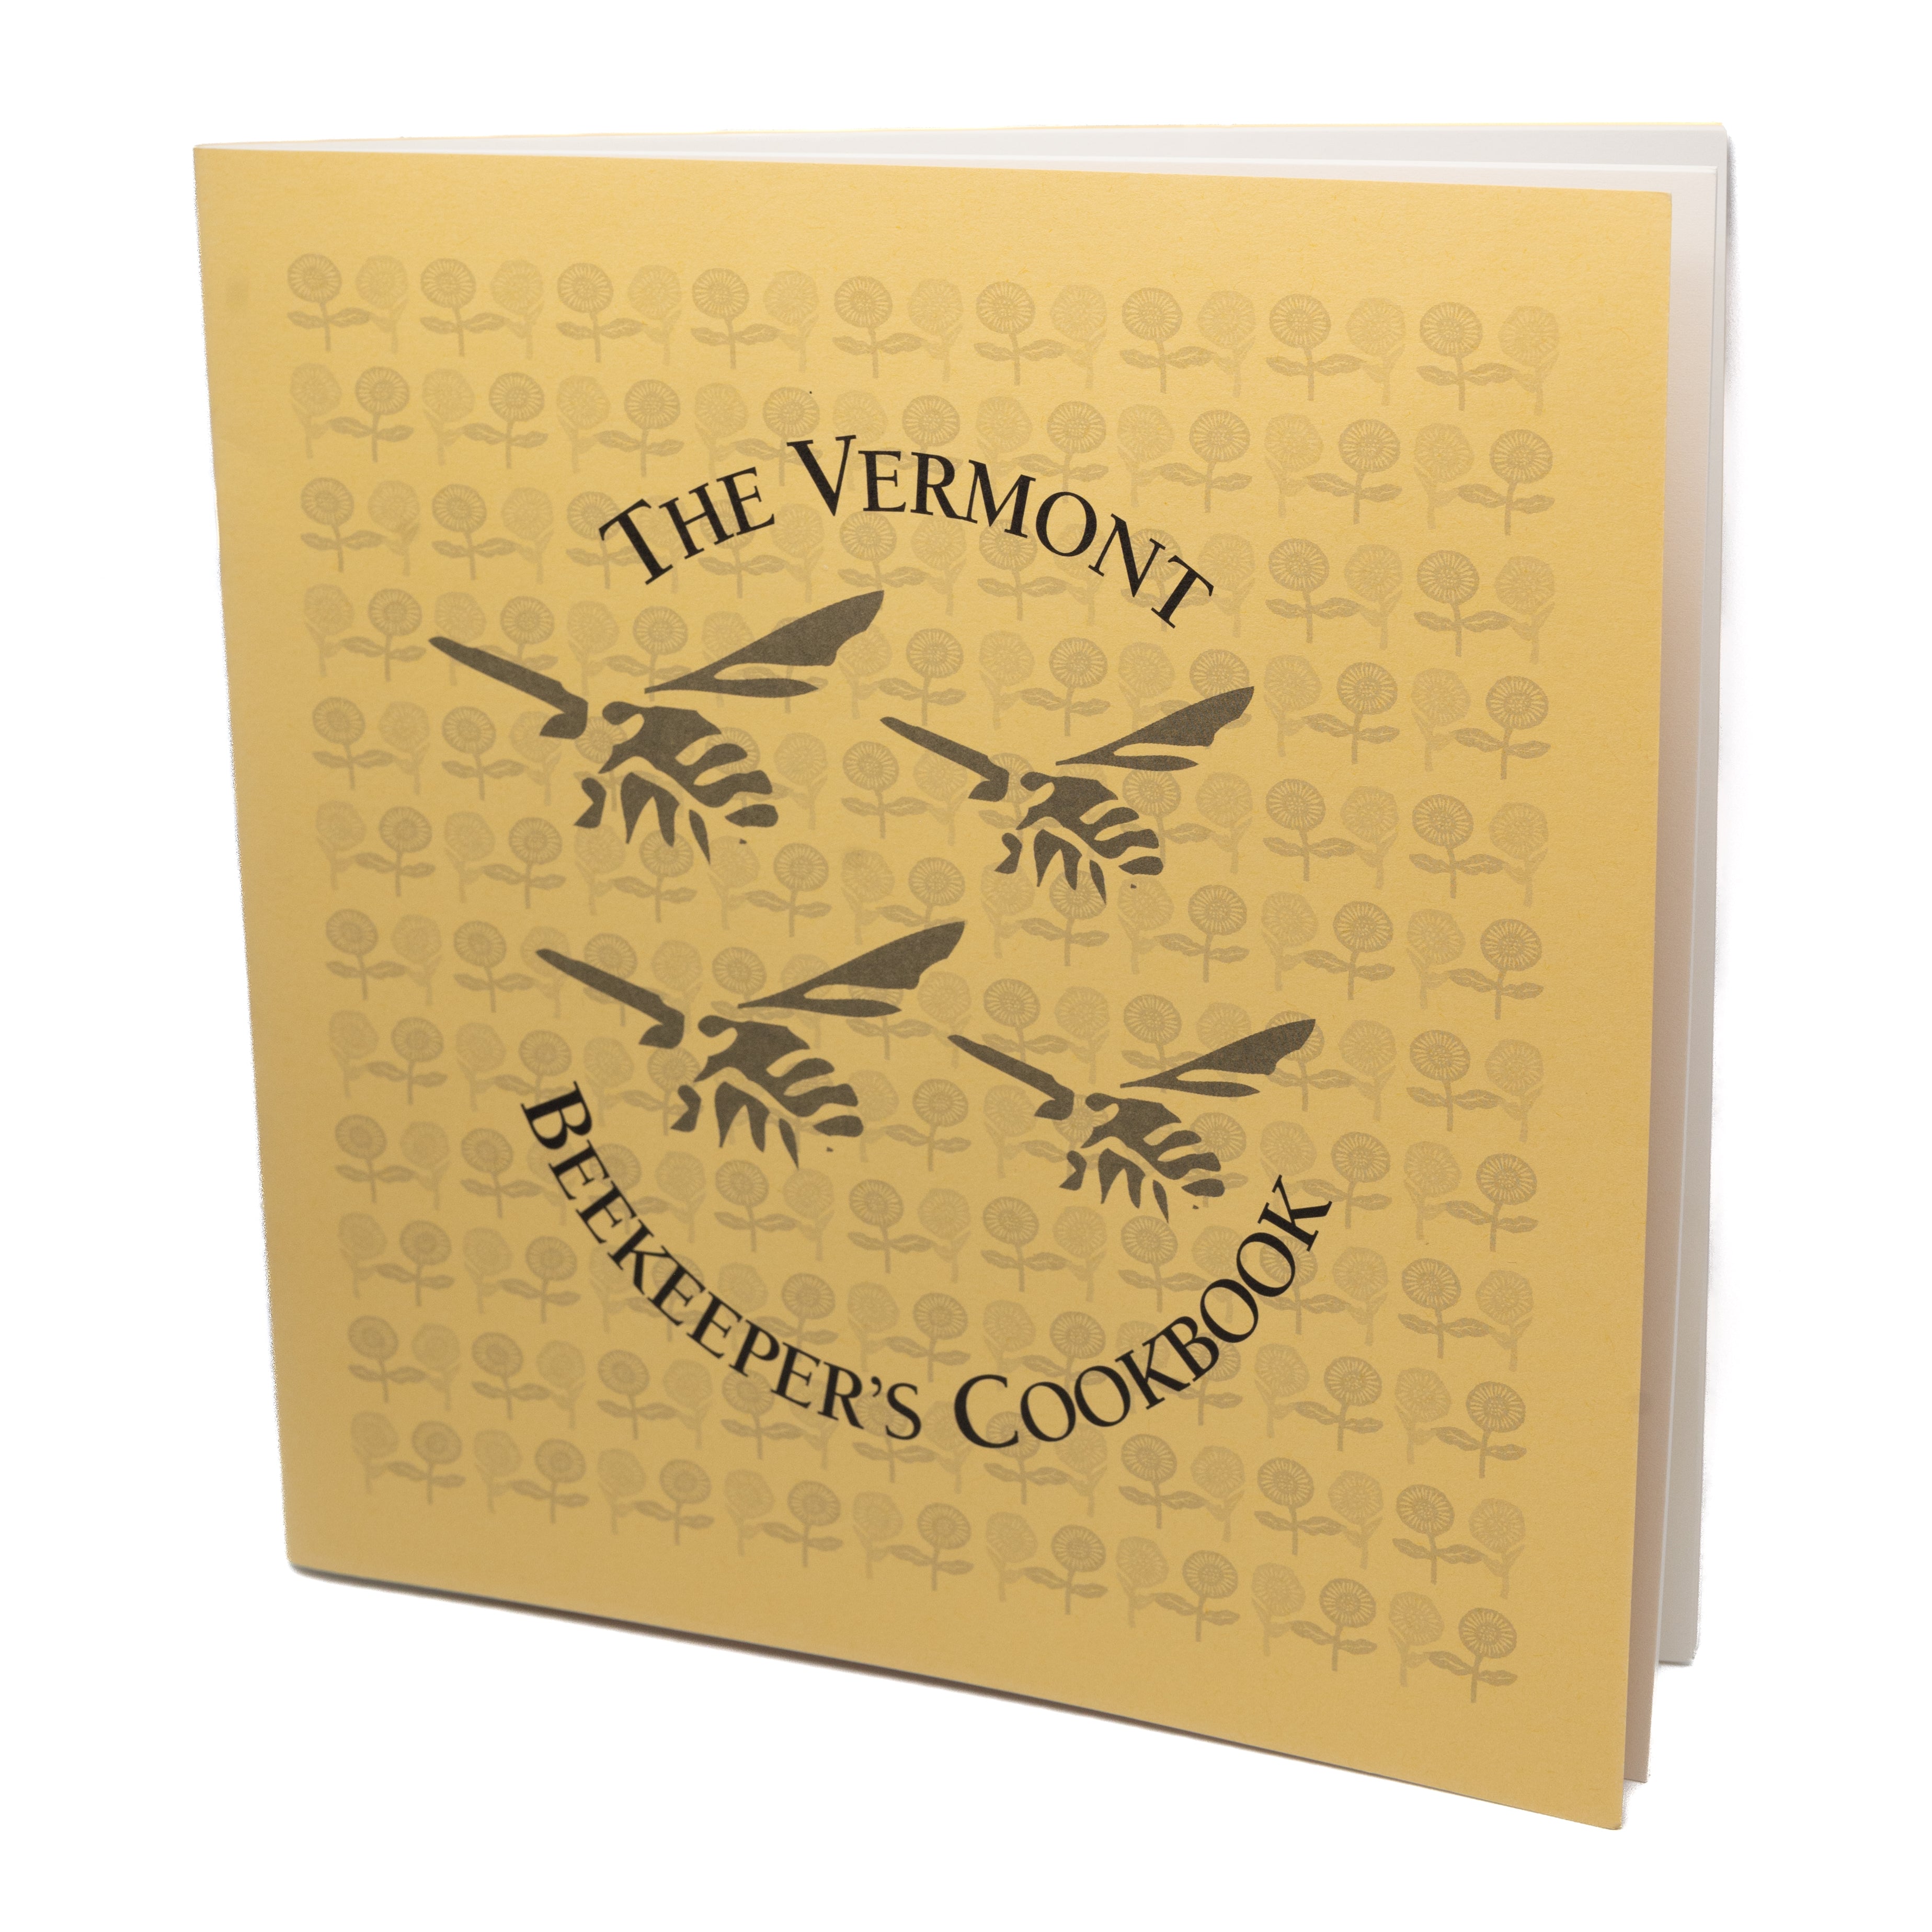 The Vermont Beekeeper's Cookbook